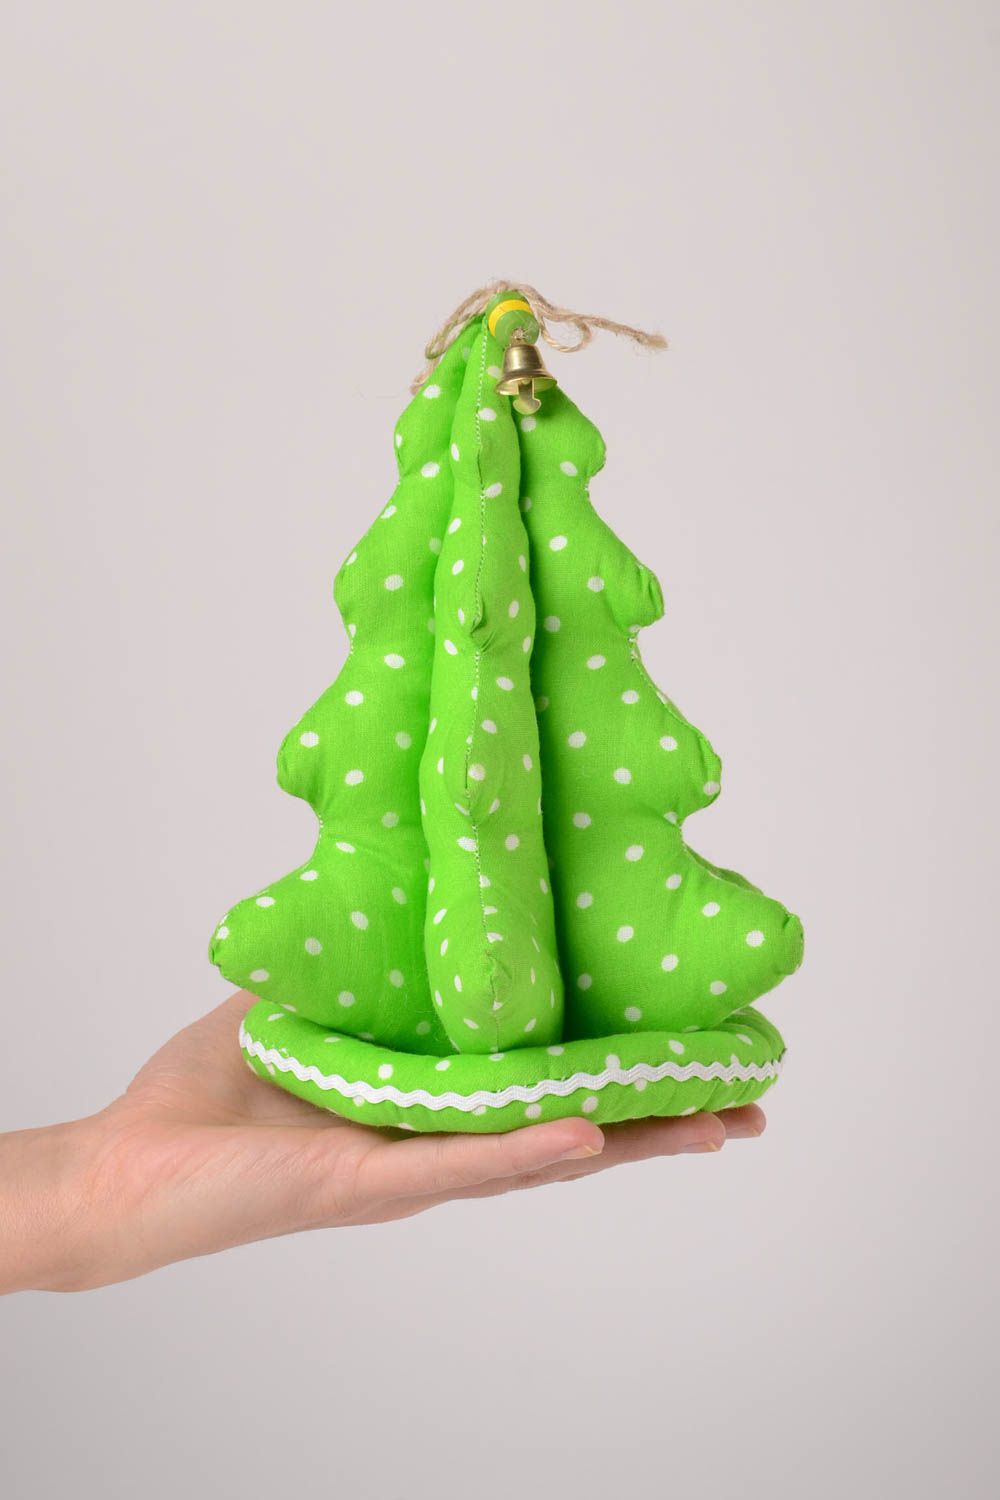 Игрушка ручной работы оригинальная игрушка зеленая елка из ткани в горошек фото 2